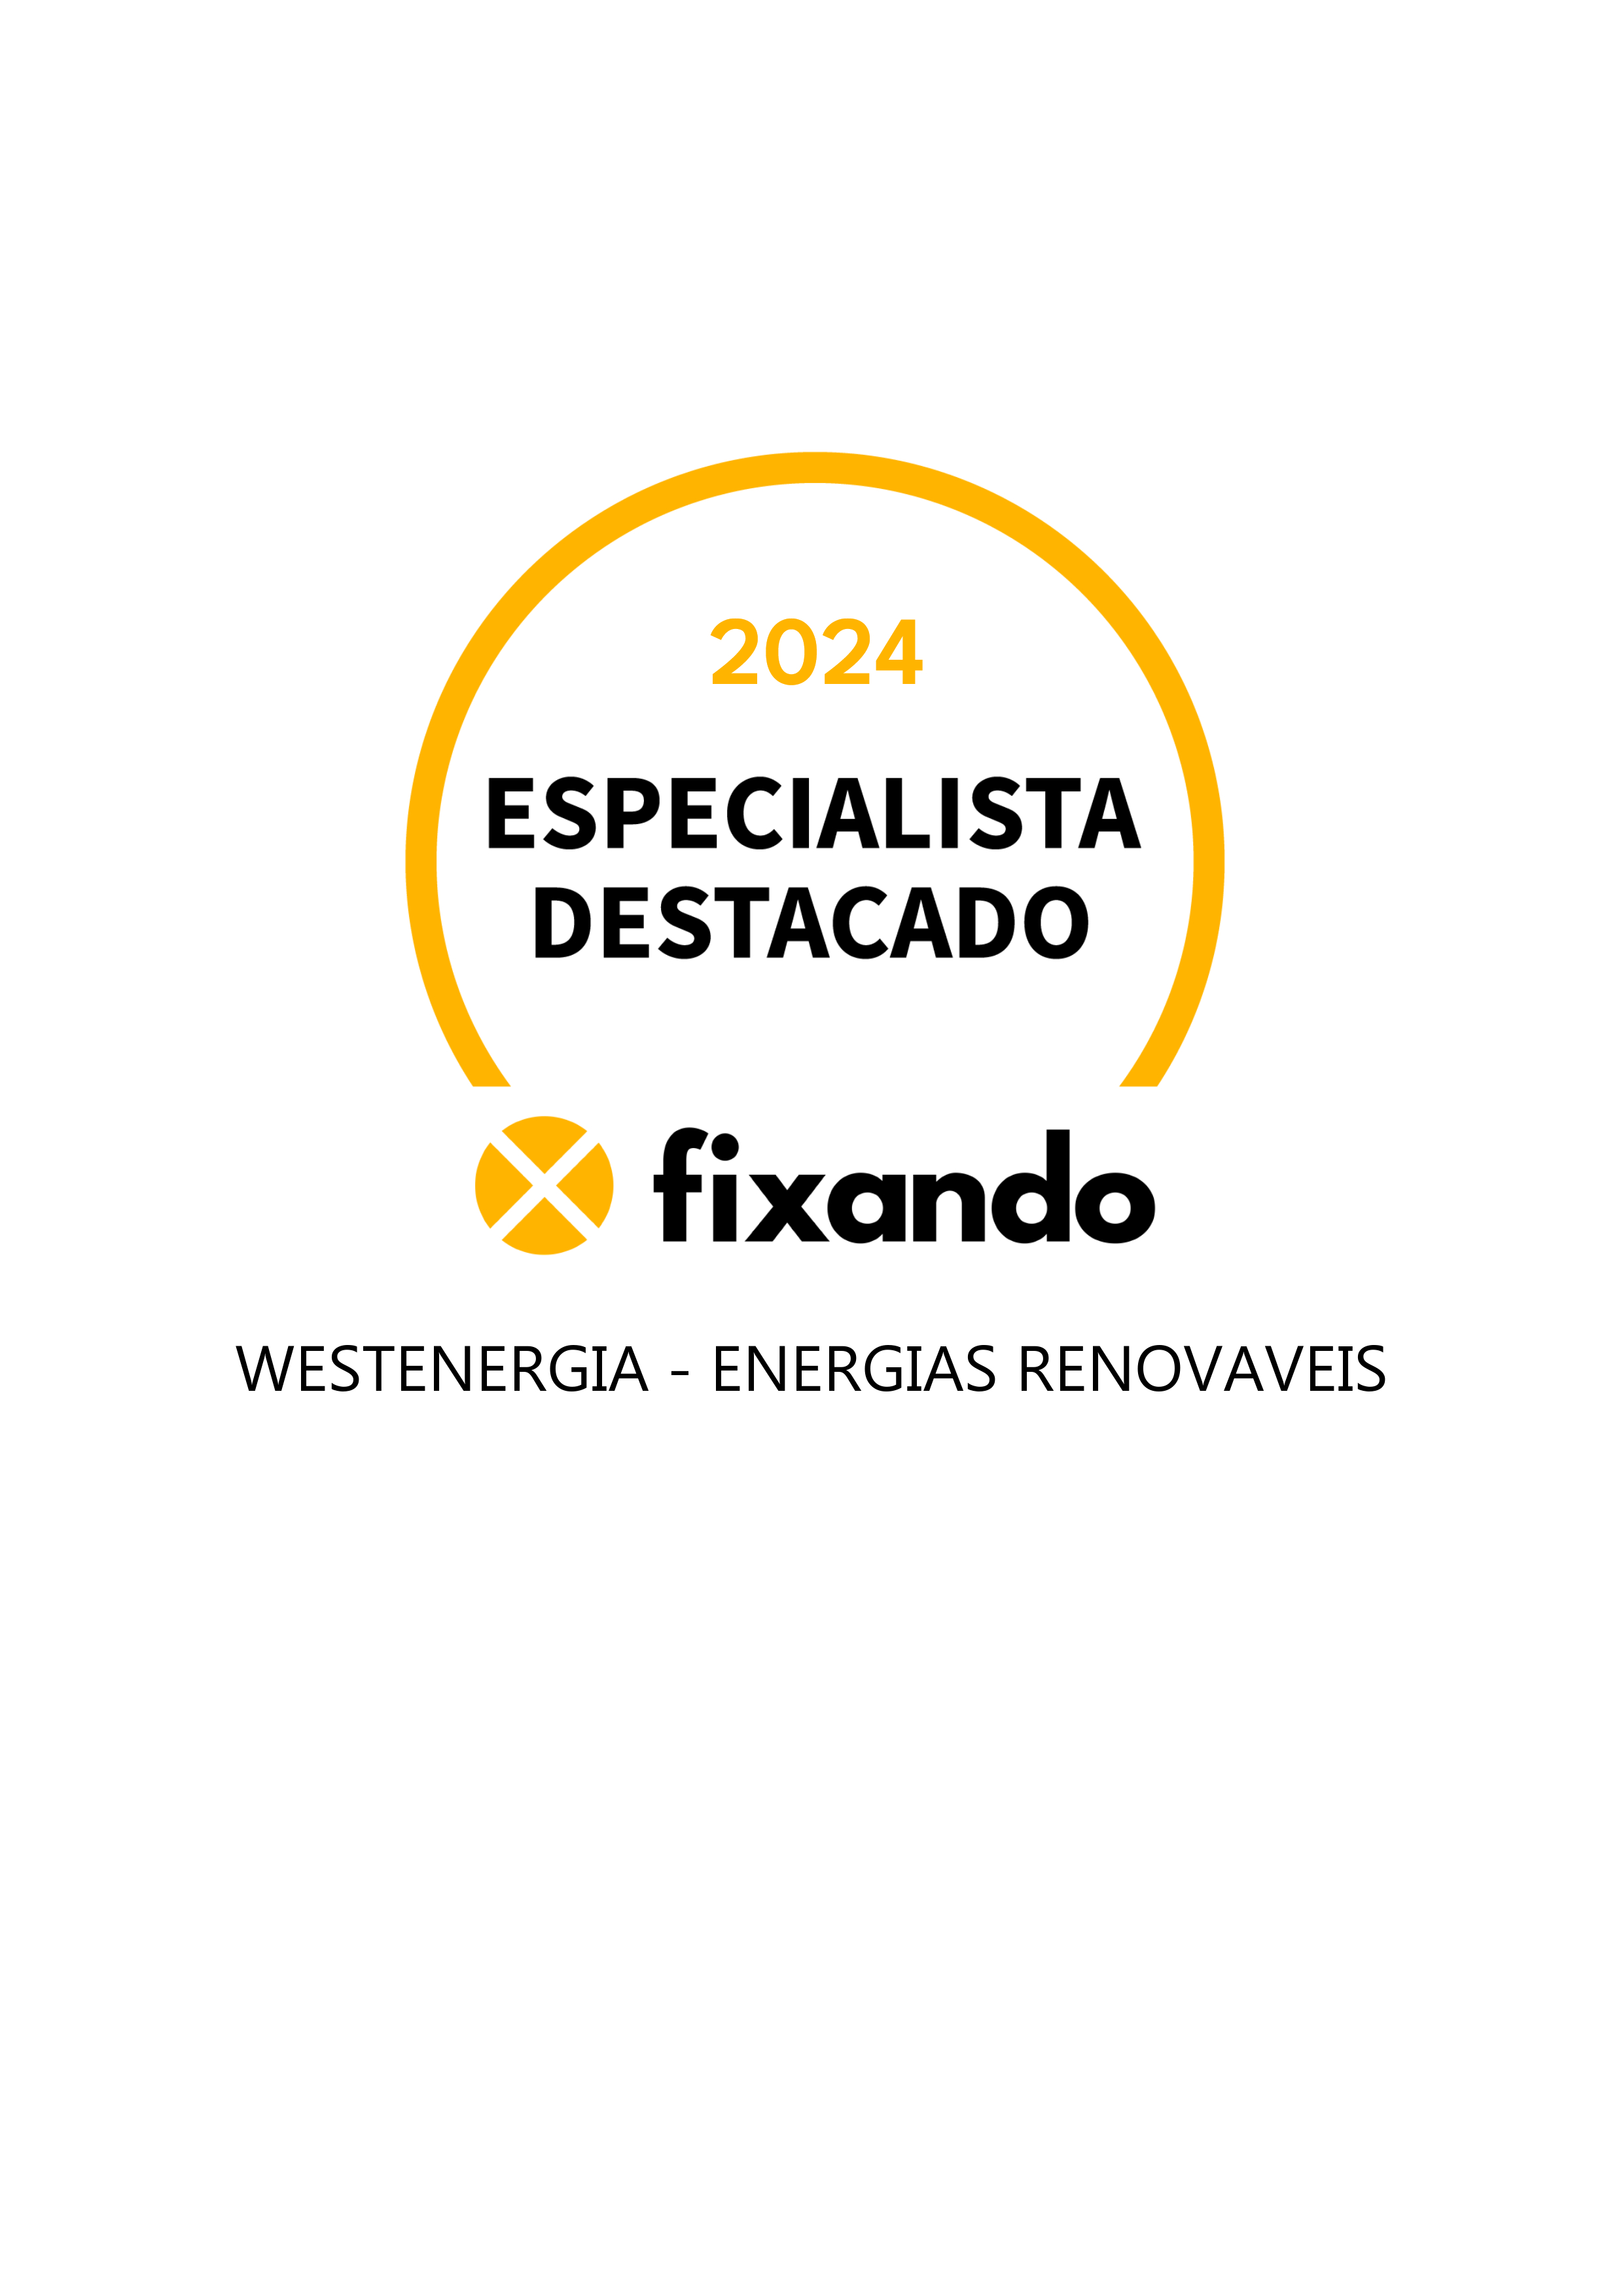 Westenergia - Energias Renovaveis - Torres Vedras - Instalação de Painel Solar